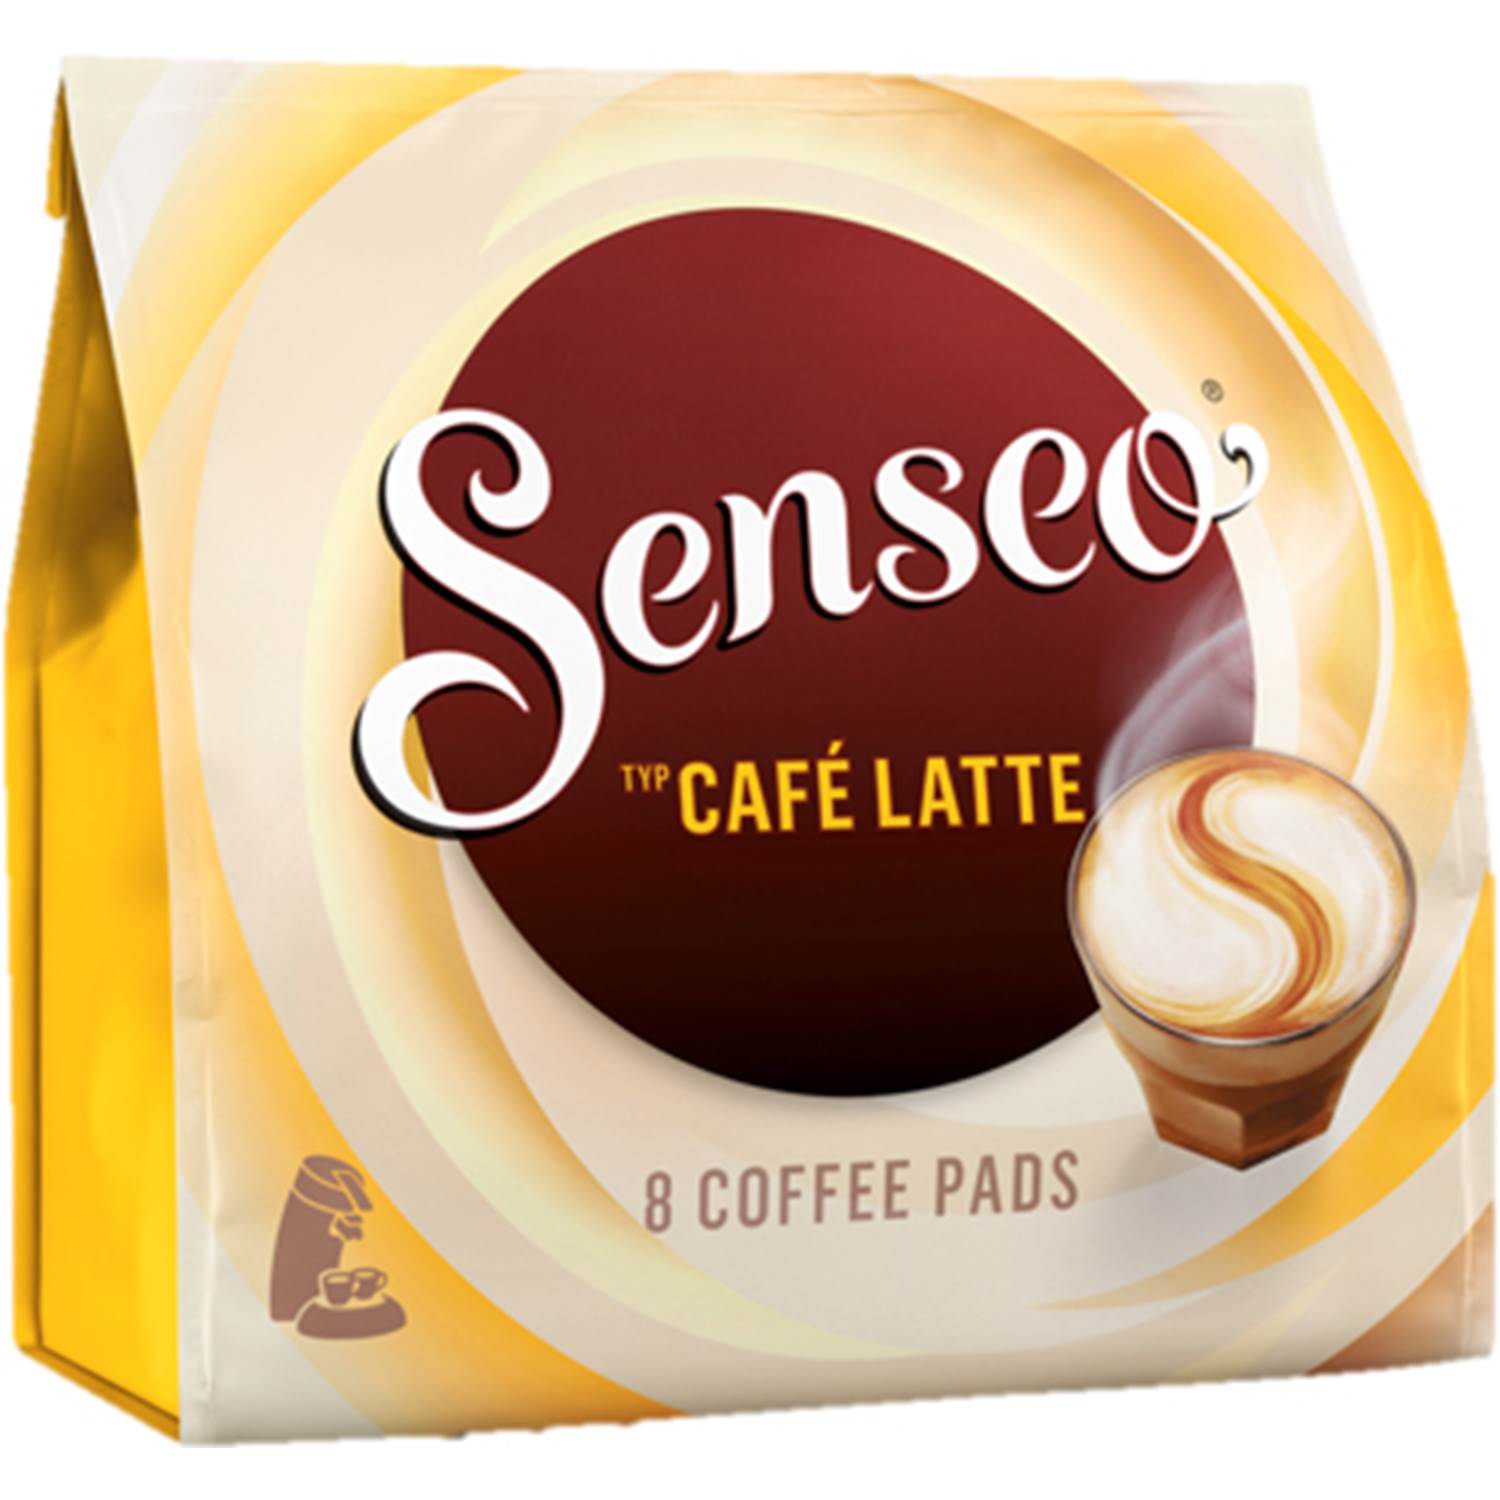 Senseo Café Latte 8 stk